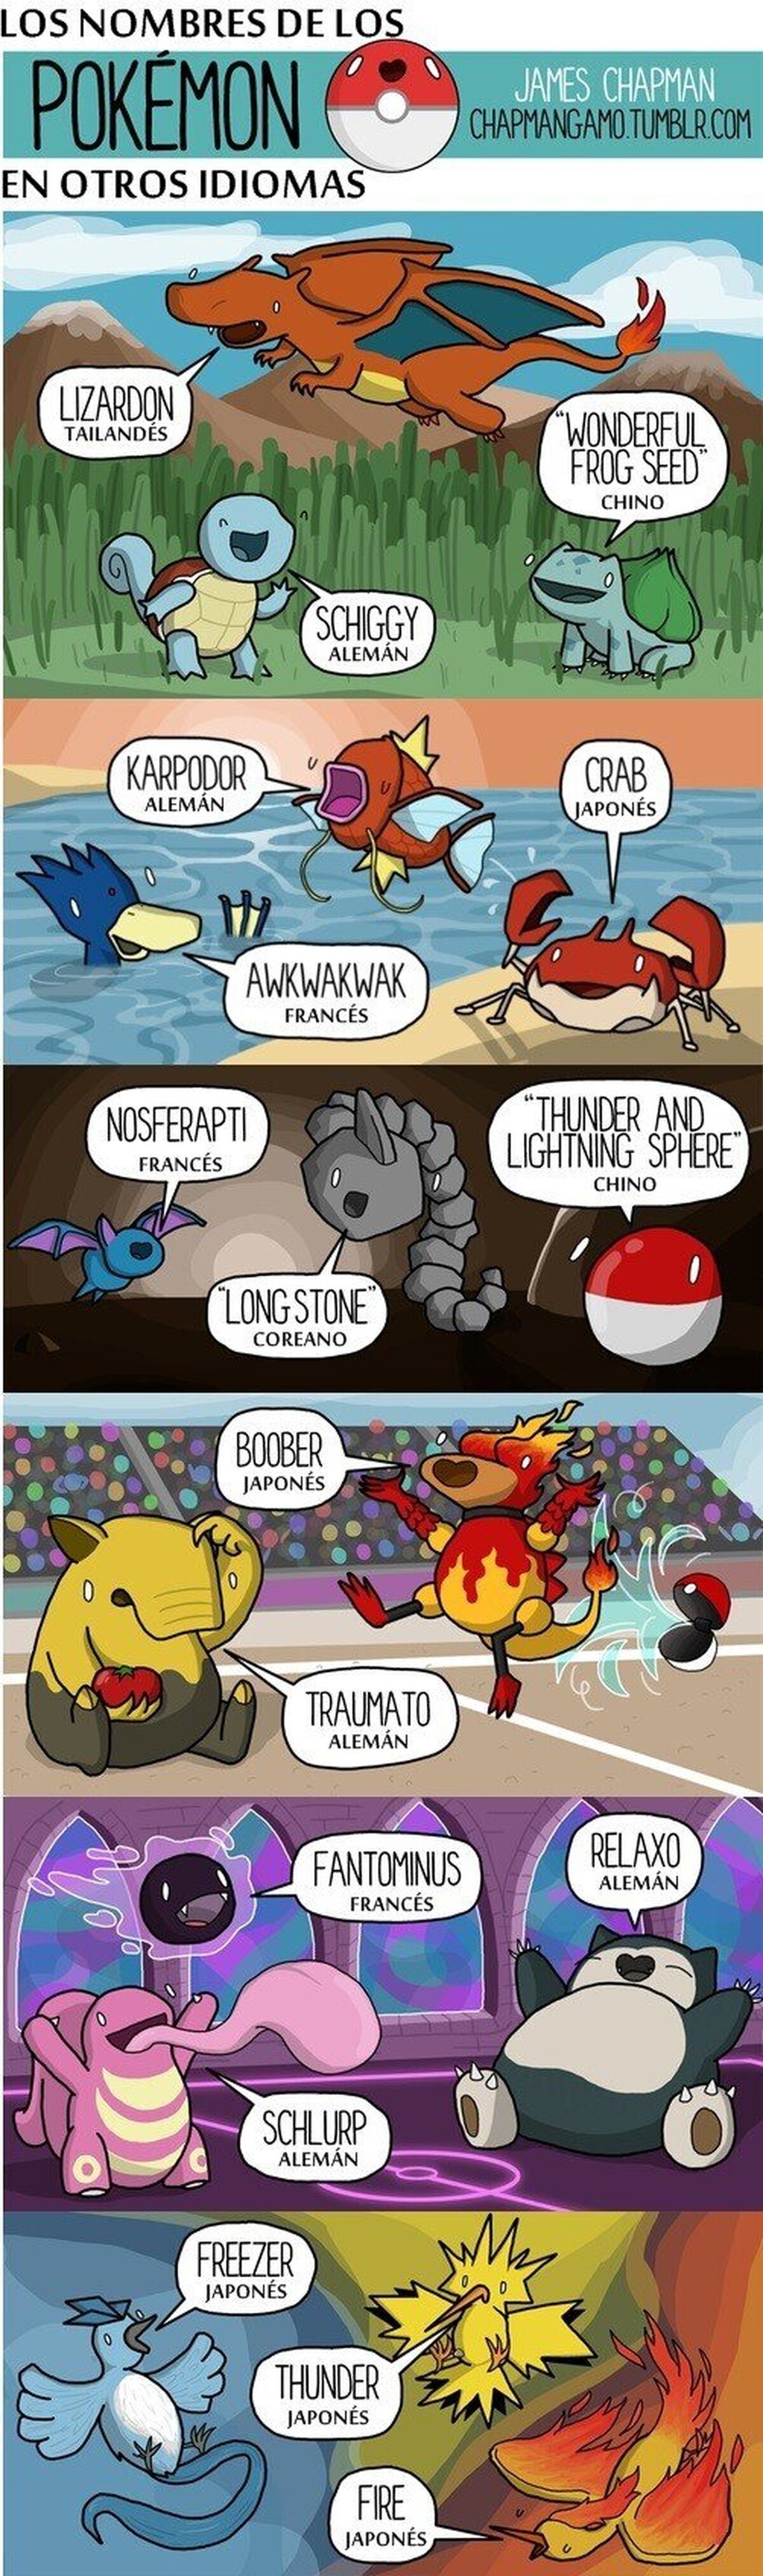 ¿Conoces los nombres de los Pokémon en otros idiomas ?